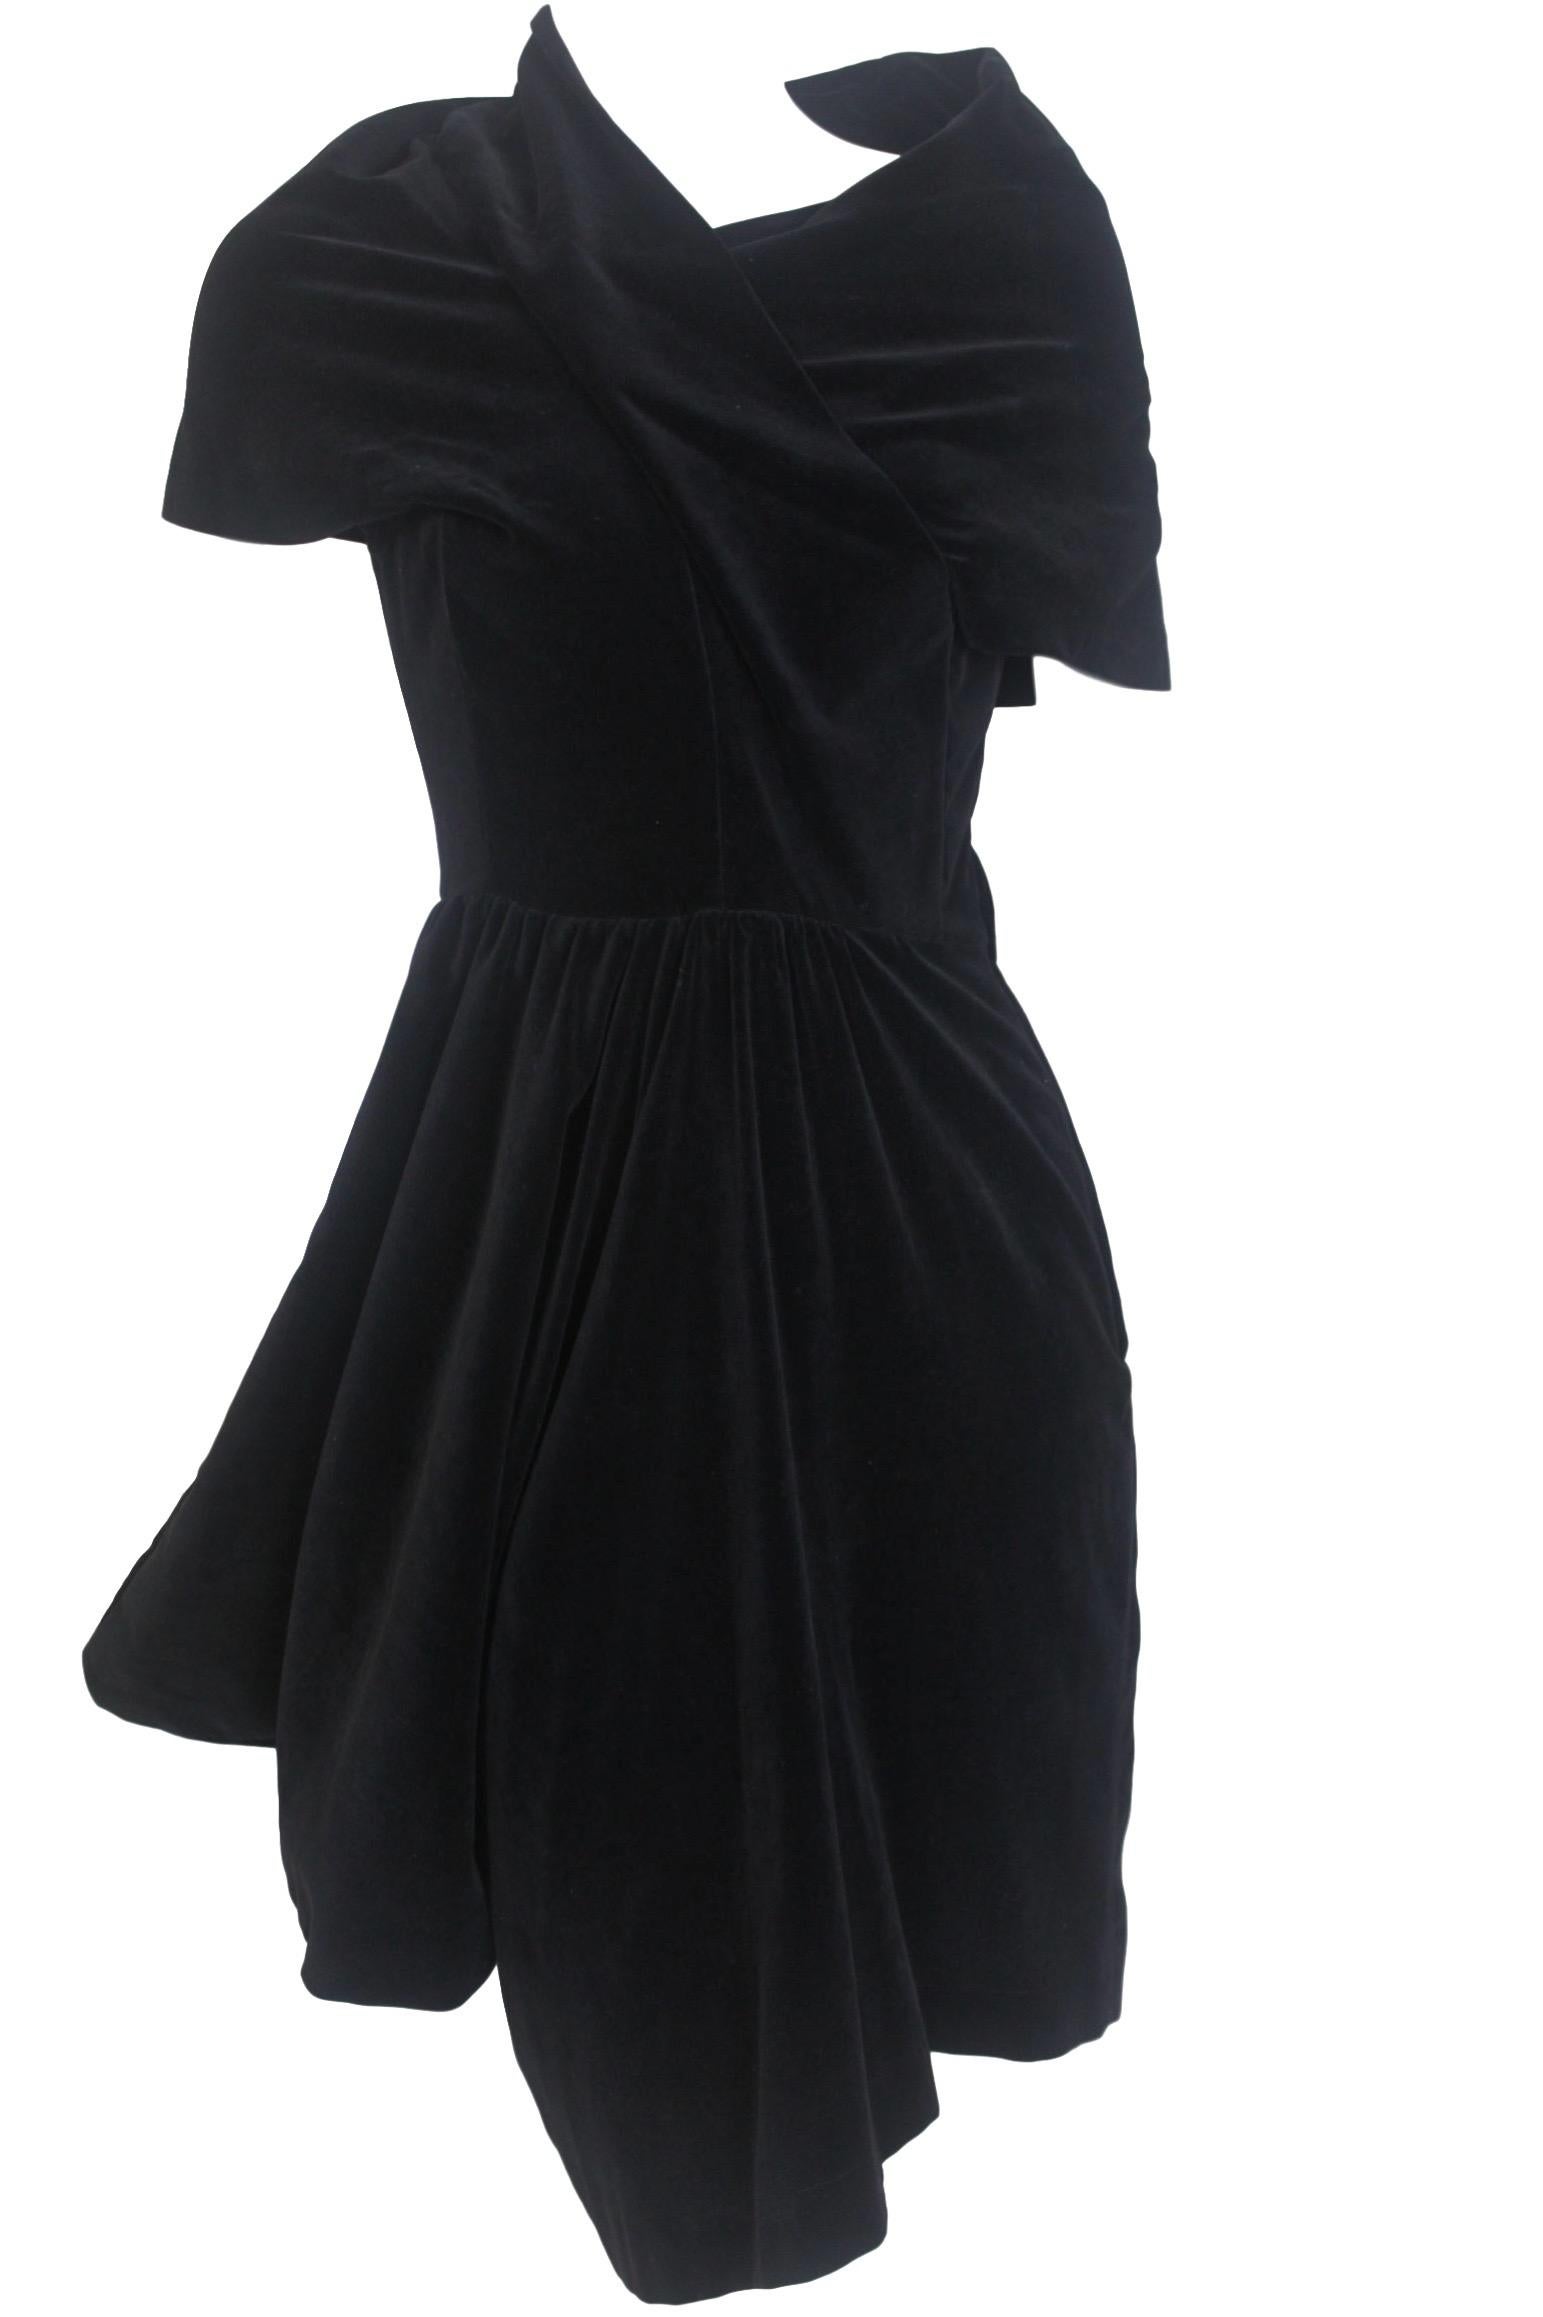 Comme des Garcons Noir
Spring/Summer 1989
Dior Esque Cotton Velvet Dress
Size S